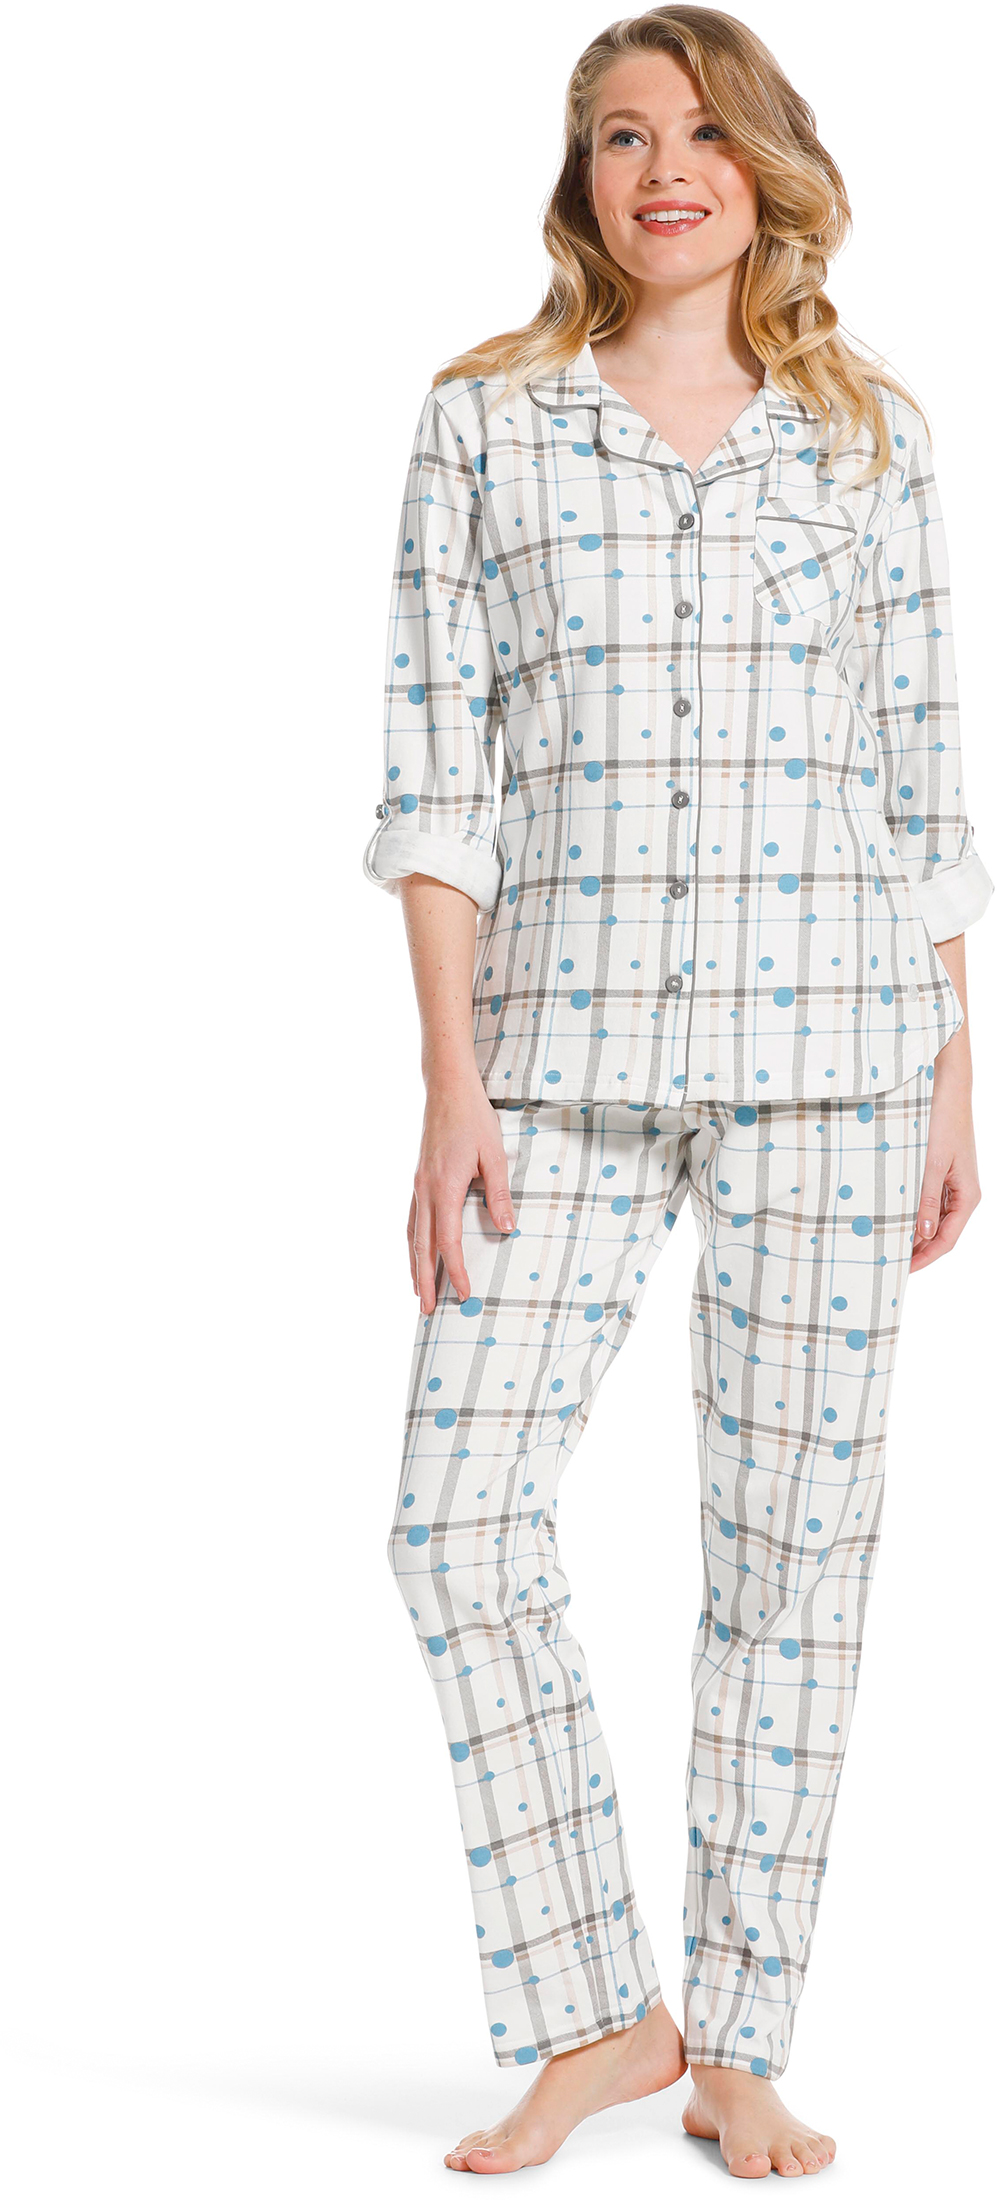 Pastunette dames doorknoop pyjama 20222 142 6 44